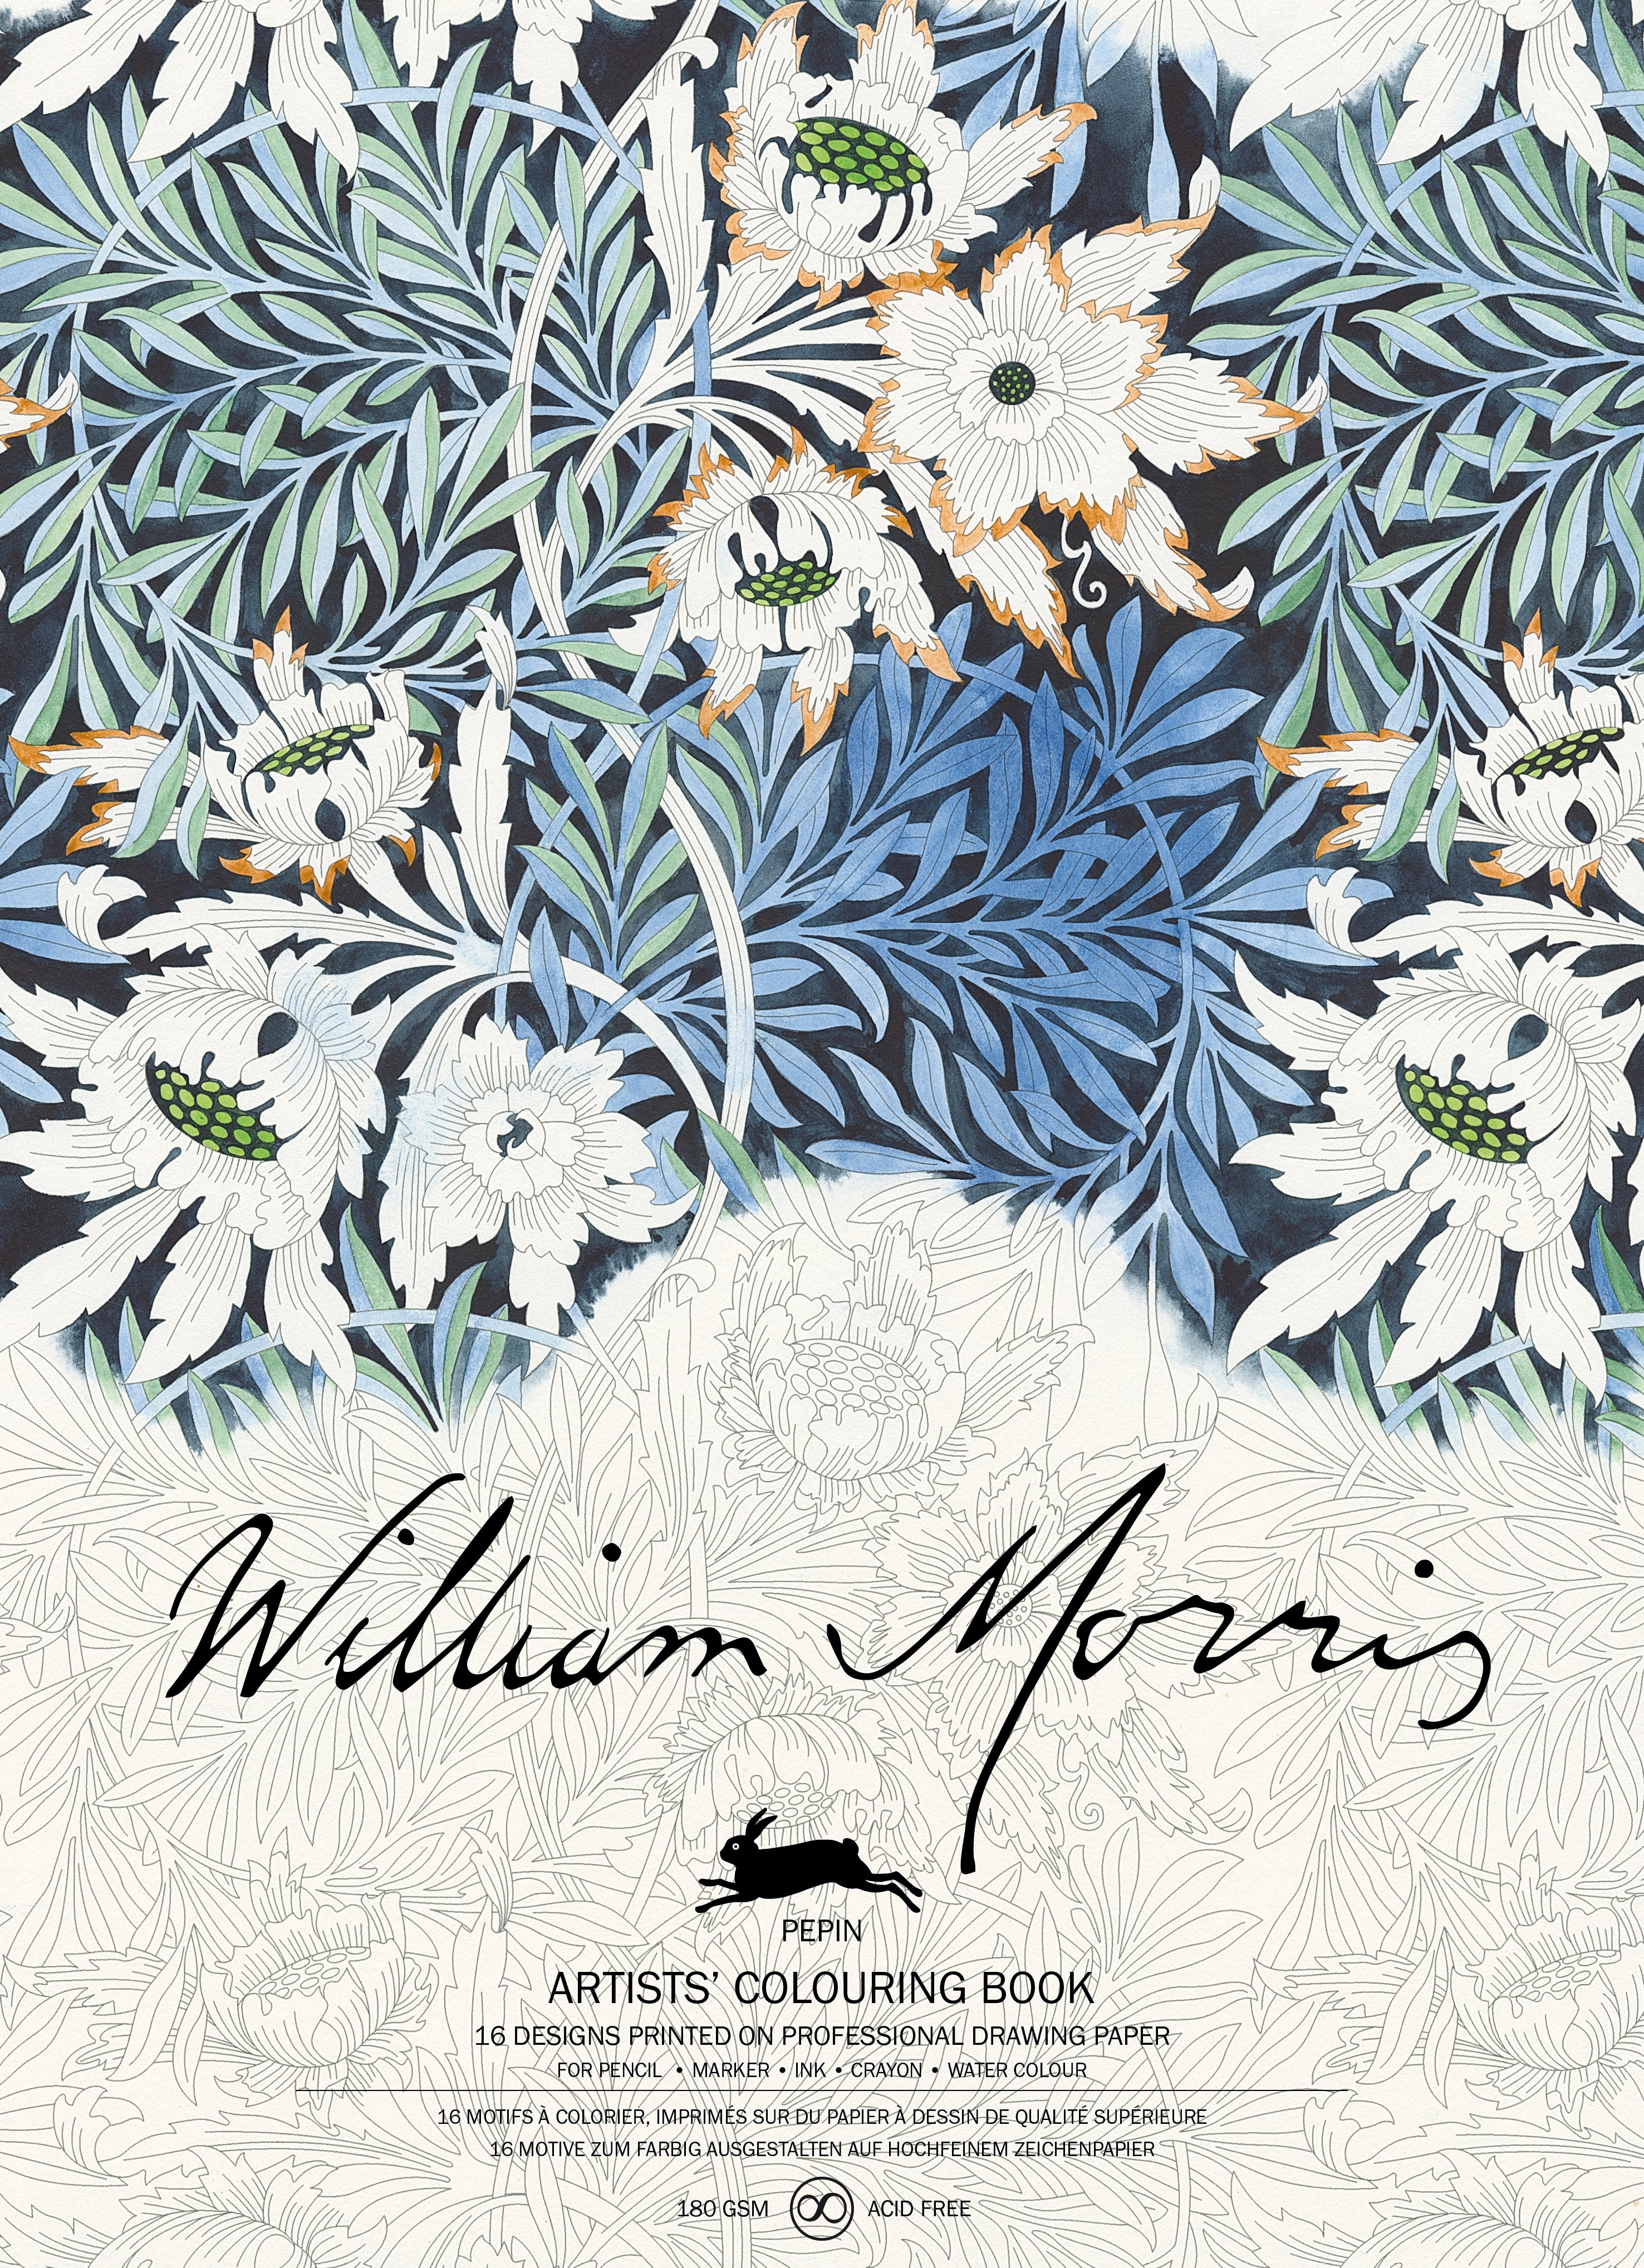 Artists' Colouring Book - William Morris